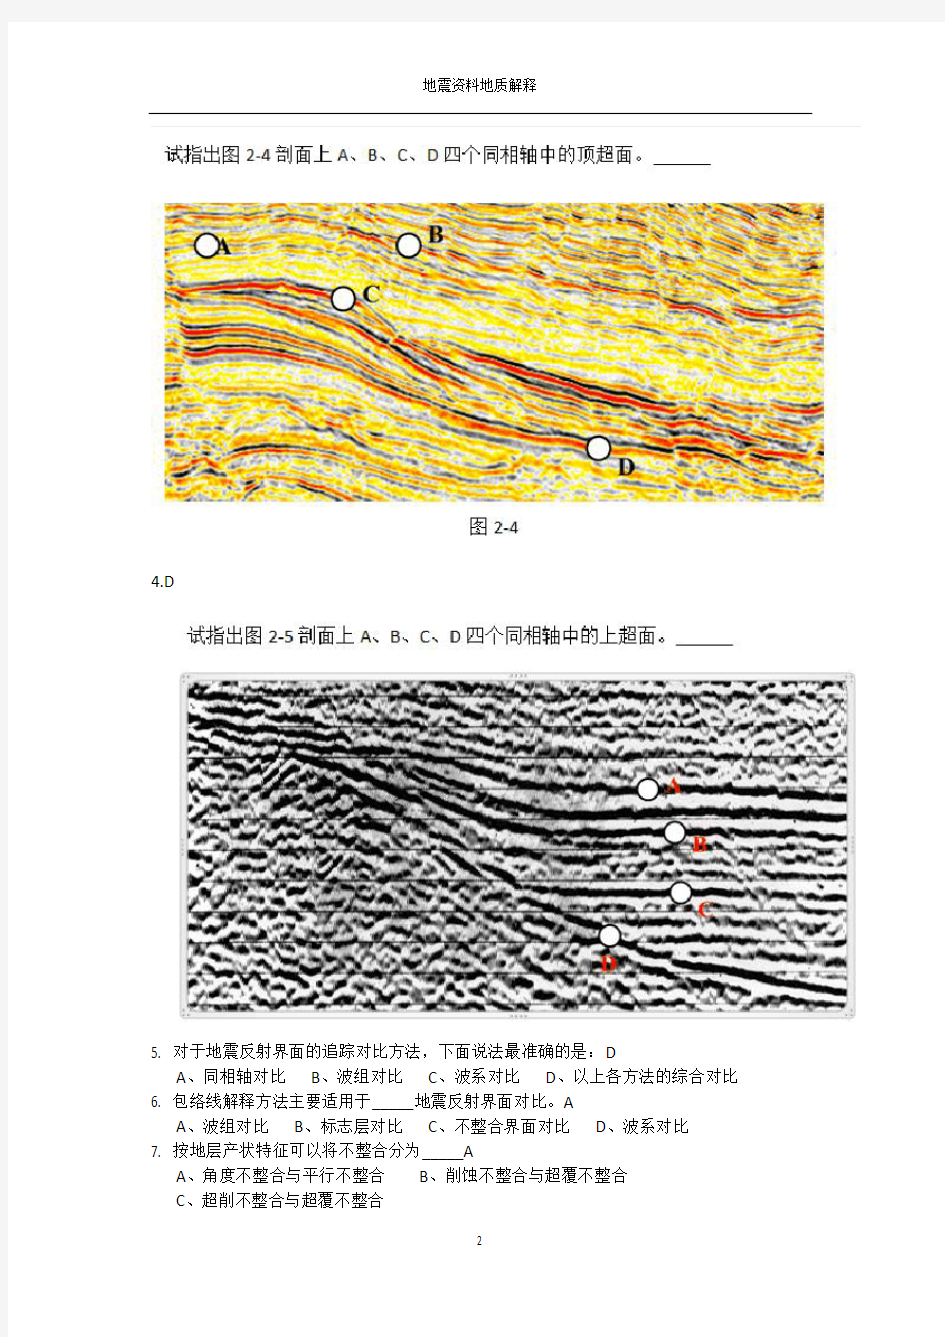 (完整版)中国石油大学(北京)地震资料在线作业答案